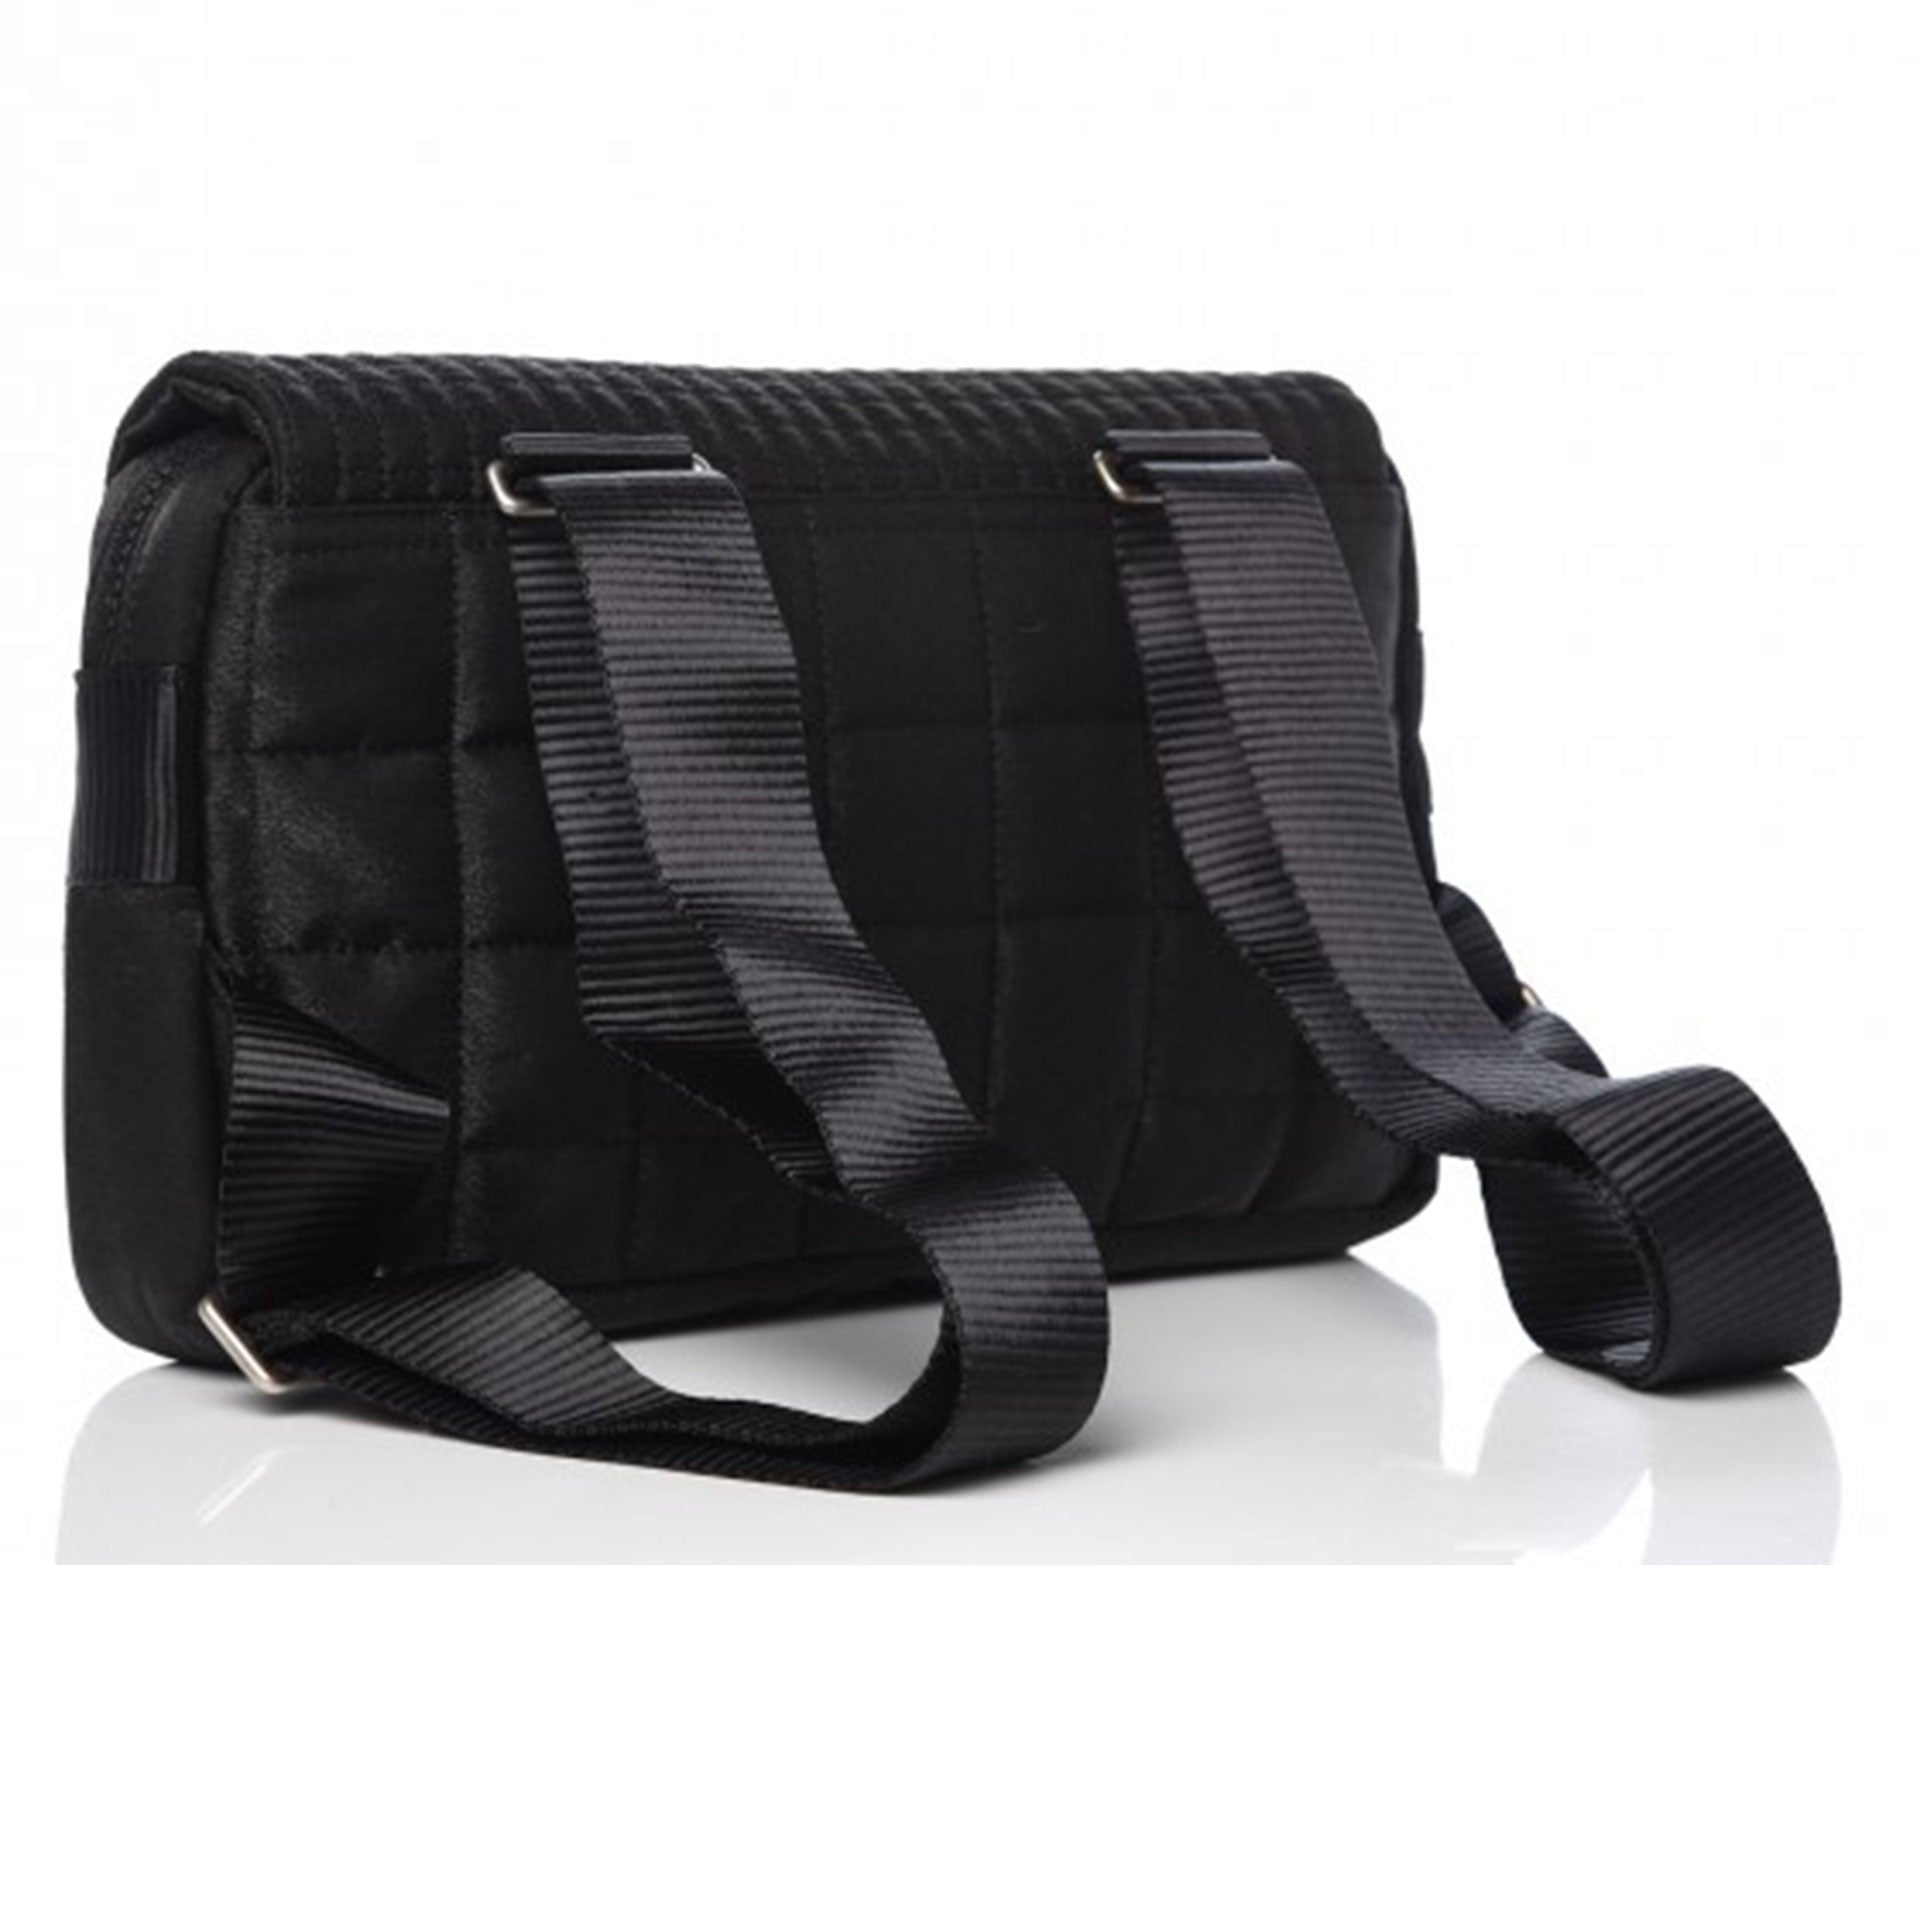 Chanel Black Nylon Ski Sport Backpack